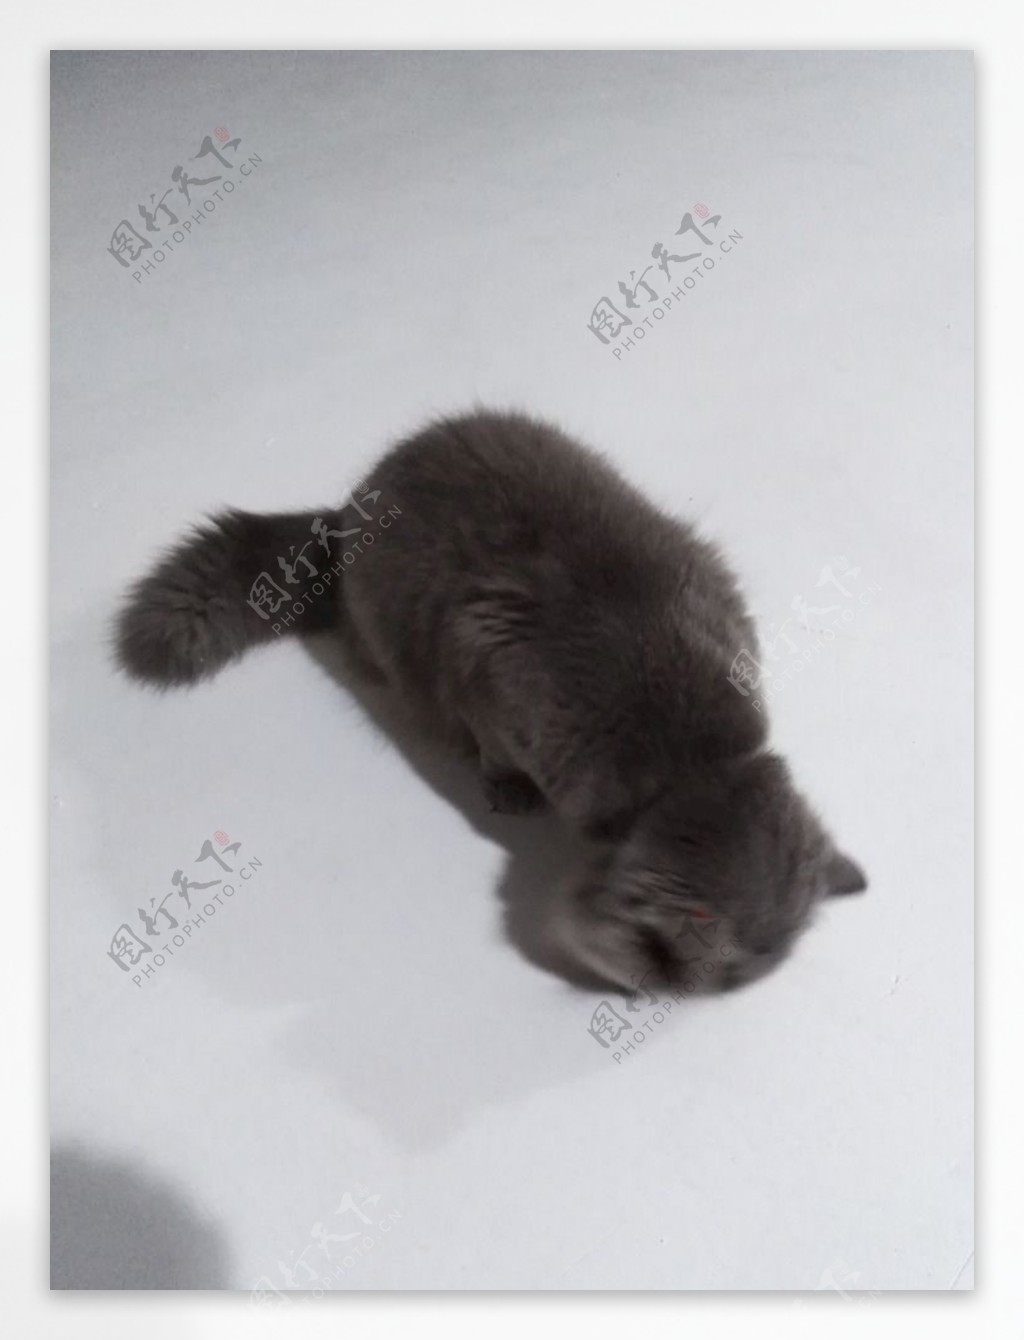 灰猫猫咪懒猫肥猫黑猫